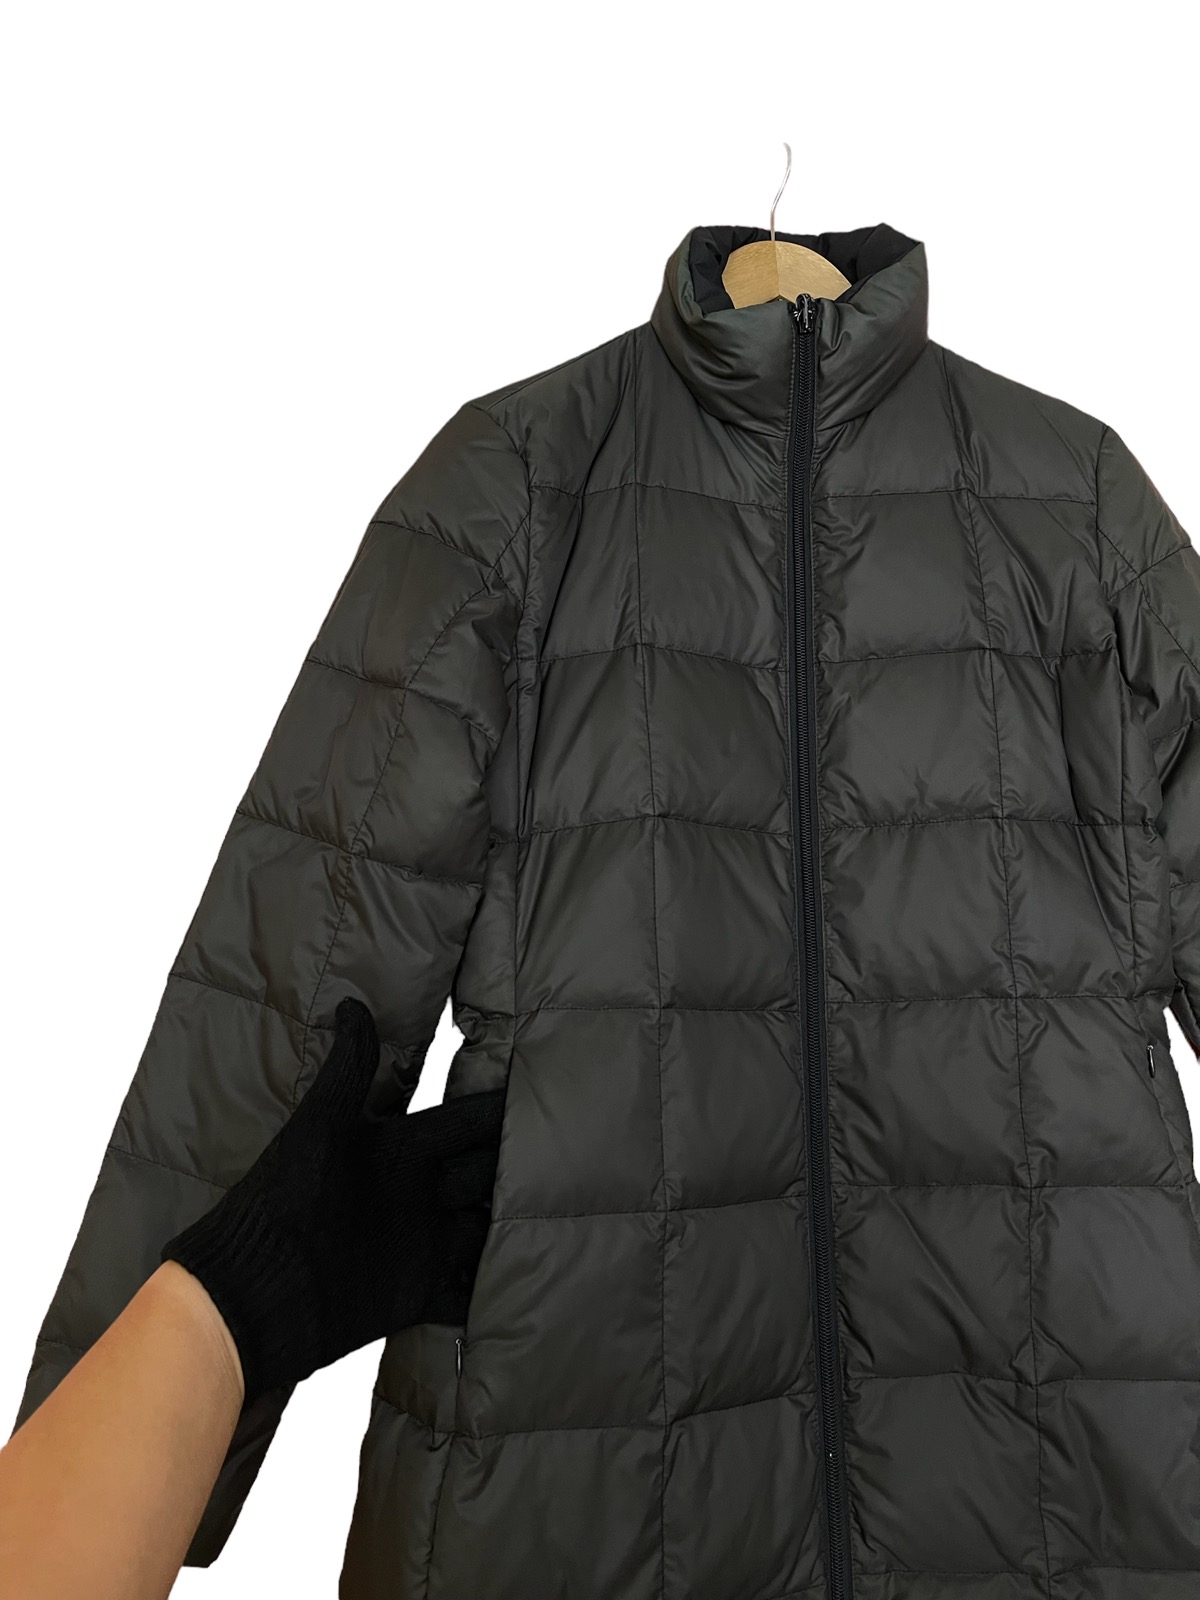 Moncler long puffer jacket reversible down jacket - 12